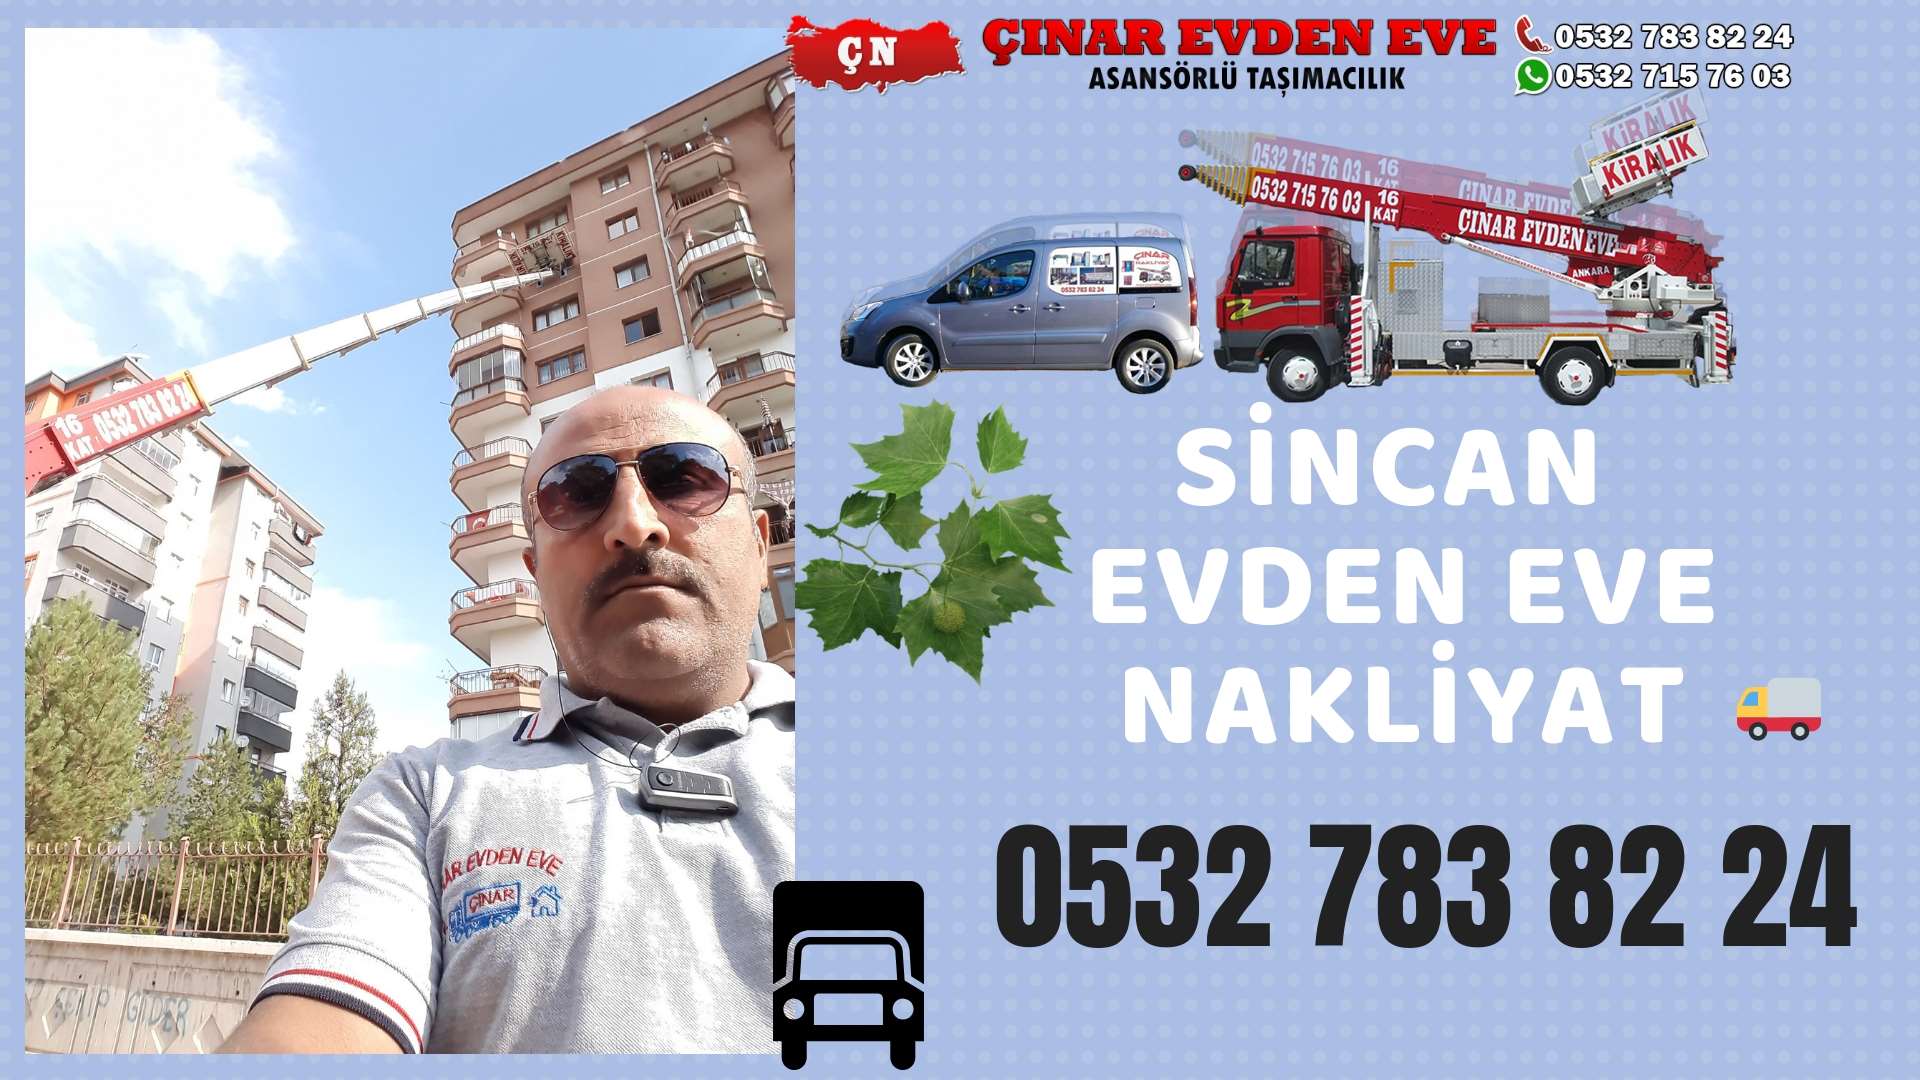 Ankara Eryaman Evden Eve Nakliyat, Asansörlü Taşımacılık, Ofis / İş Yeri Taşıma 0532 715 76 03